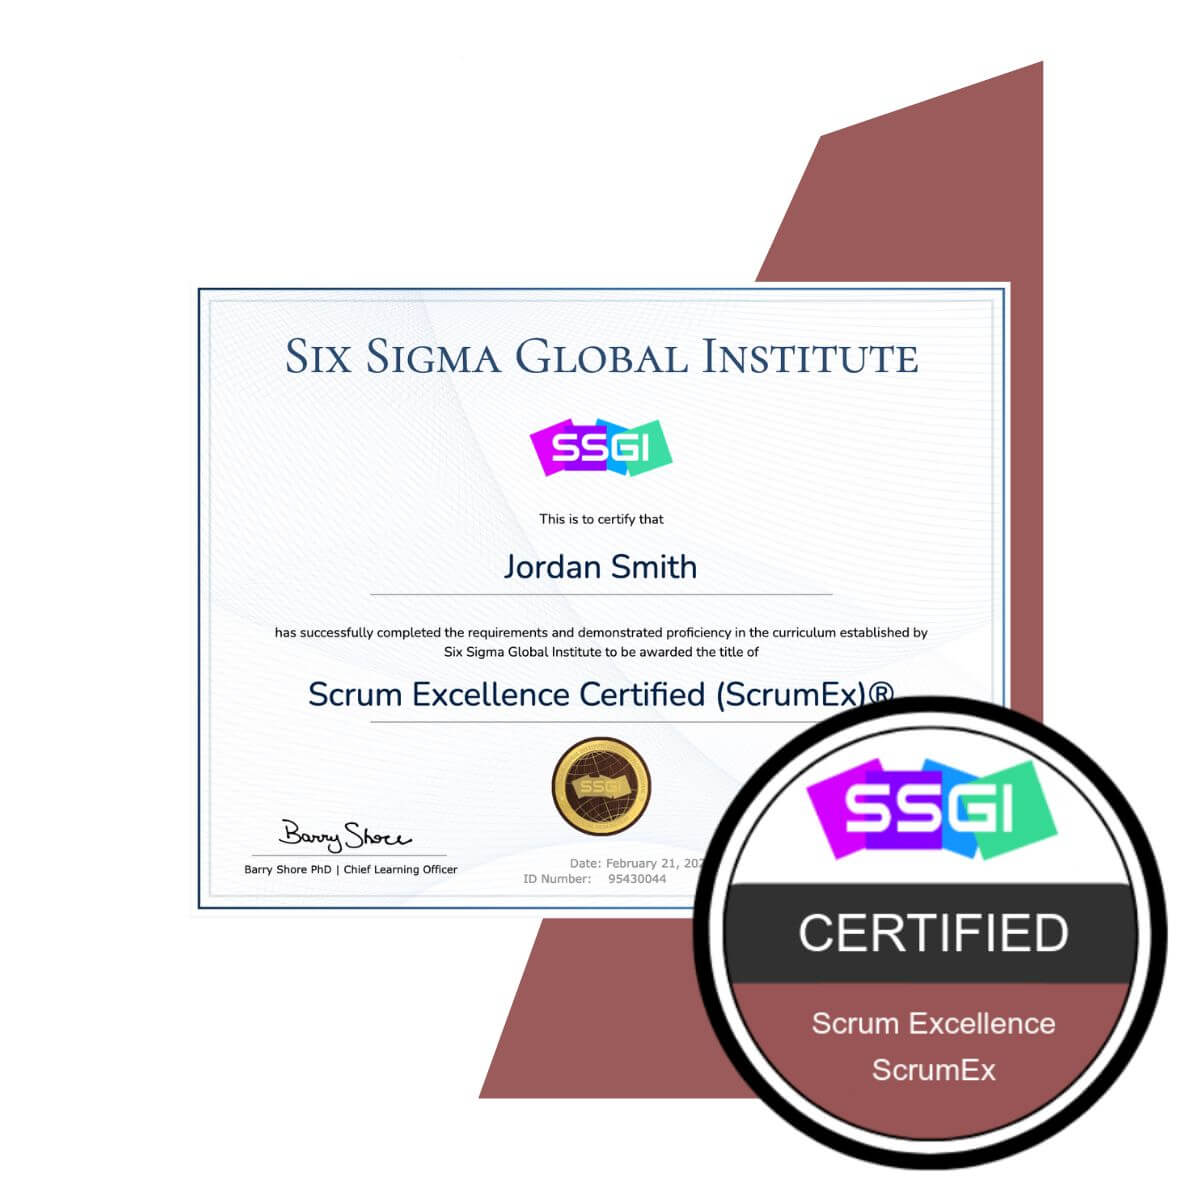 SSGI Scrum Excellence (ScrumEx)